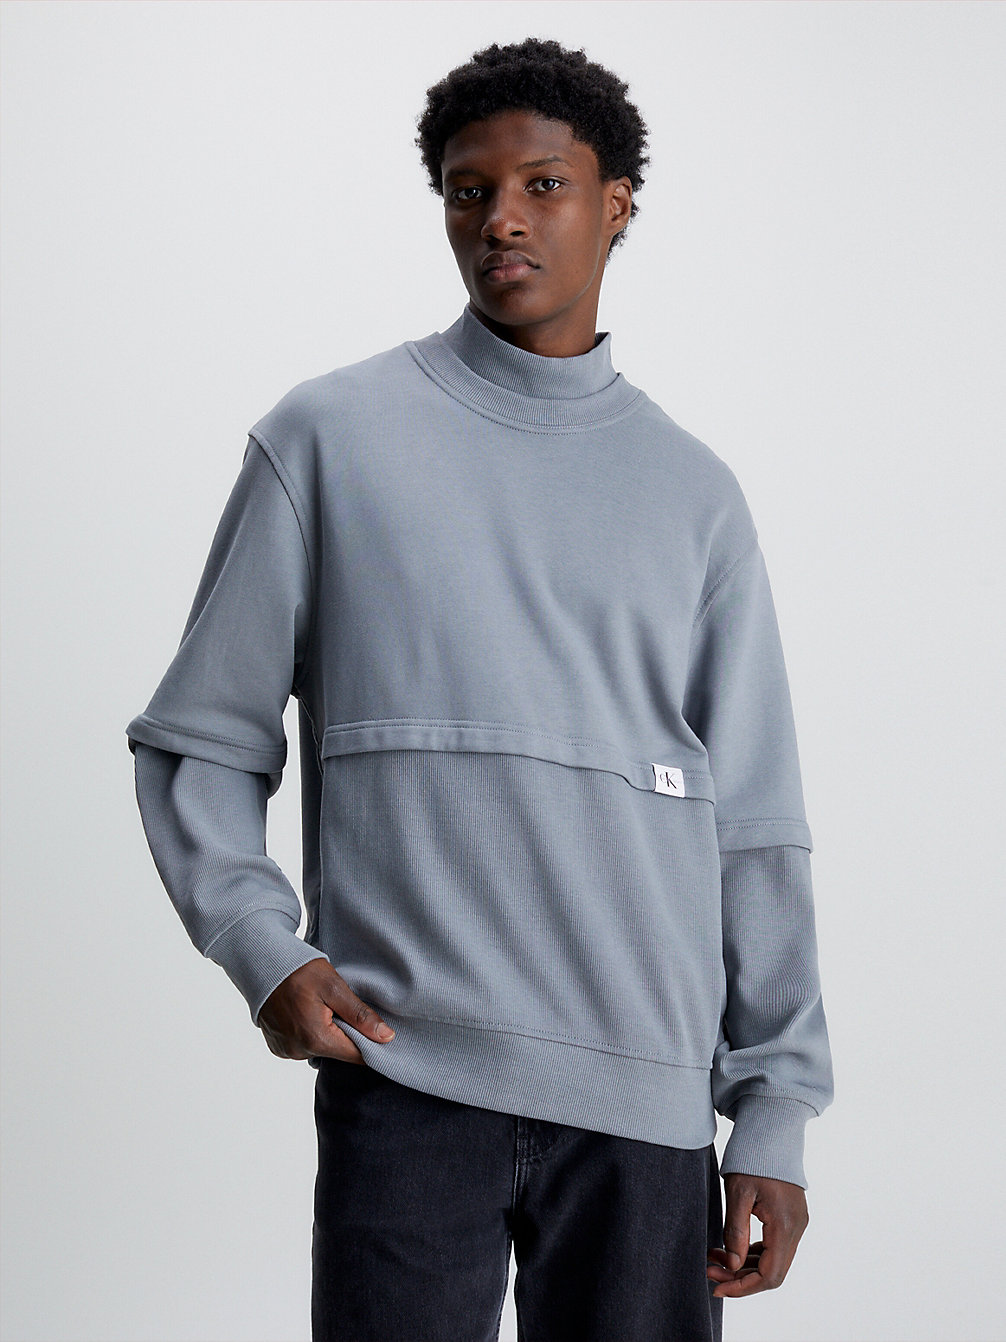 OVERCAST GREY Lässiges Sweatshirt Aus Materialmix undefined Herren Calvin Klein